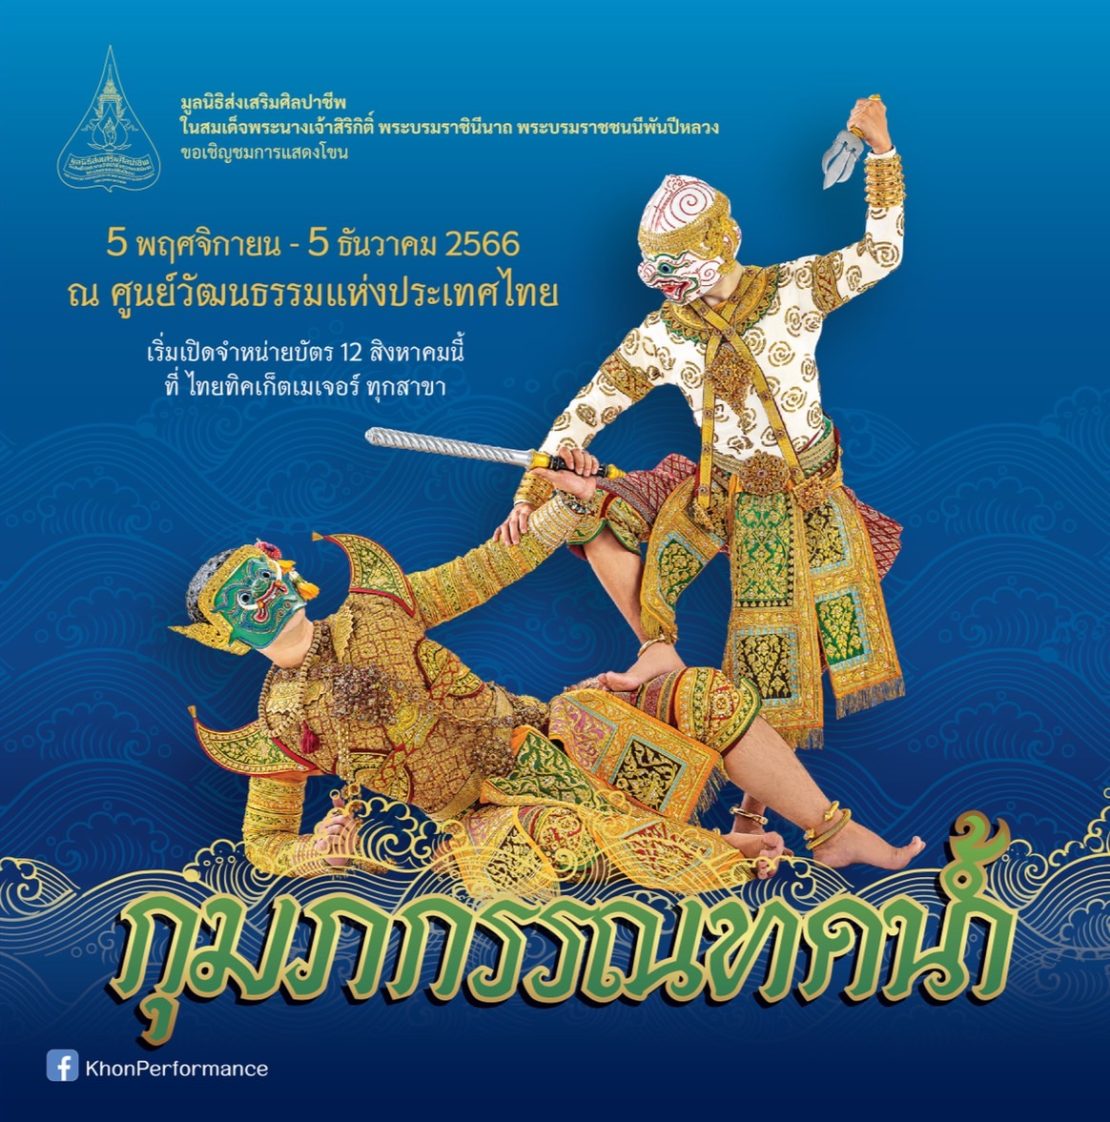 มูลนิธิส่งเสริมศิลปาชีพ เปิดการแสดงโขน เรื่องรามเกียรติ์ ตอน “กุมภกรรณทดน้ำ” ณ หอประชุมใหญ่ ศูนย์วัฒนธรรมแห่งประเทศไทย ระหว่างวันที่ 5 พฤศจิกายน ถึงวันที่ 5 ธันวาคม 2566 เปิดจำหน่ายบัตรตั้งแต่วันที่ 12 สิงหาคม เป็นต้นไป ที่ไทยทิคเก็ตเมเจอร์ทุกสาขา